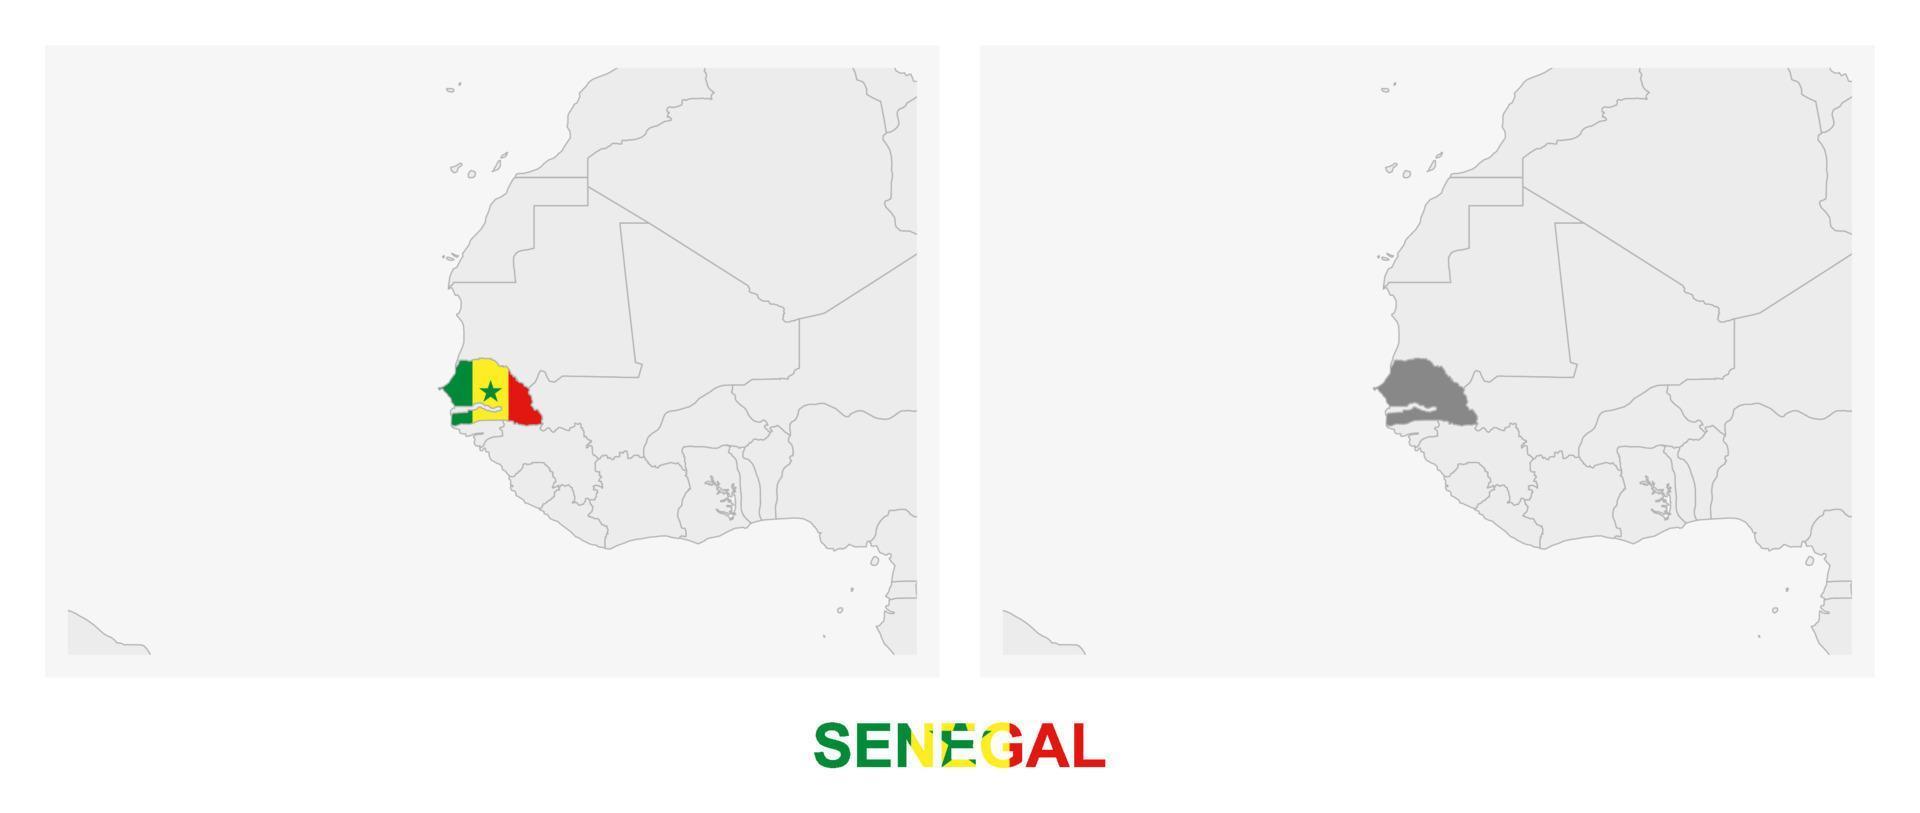 deux versions de la carte du sénégal, avec le drapeau du sénégal et surlignées en gris foncé. vecteur